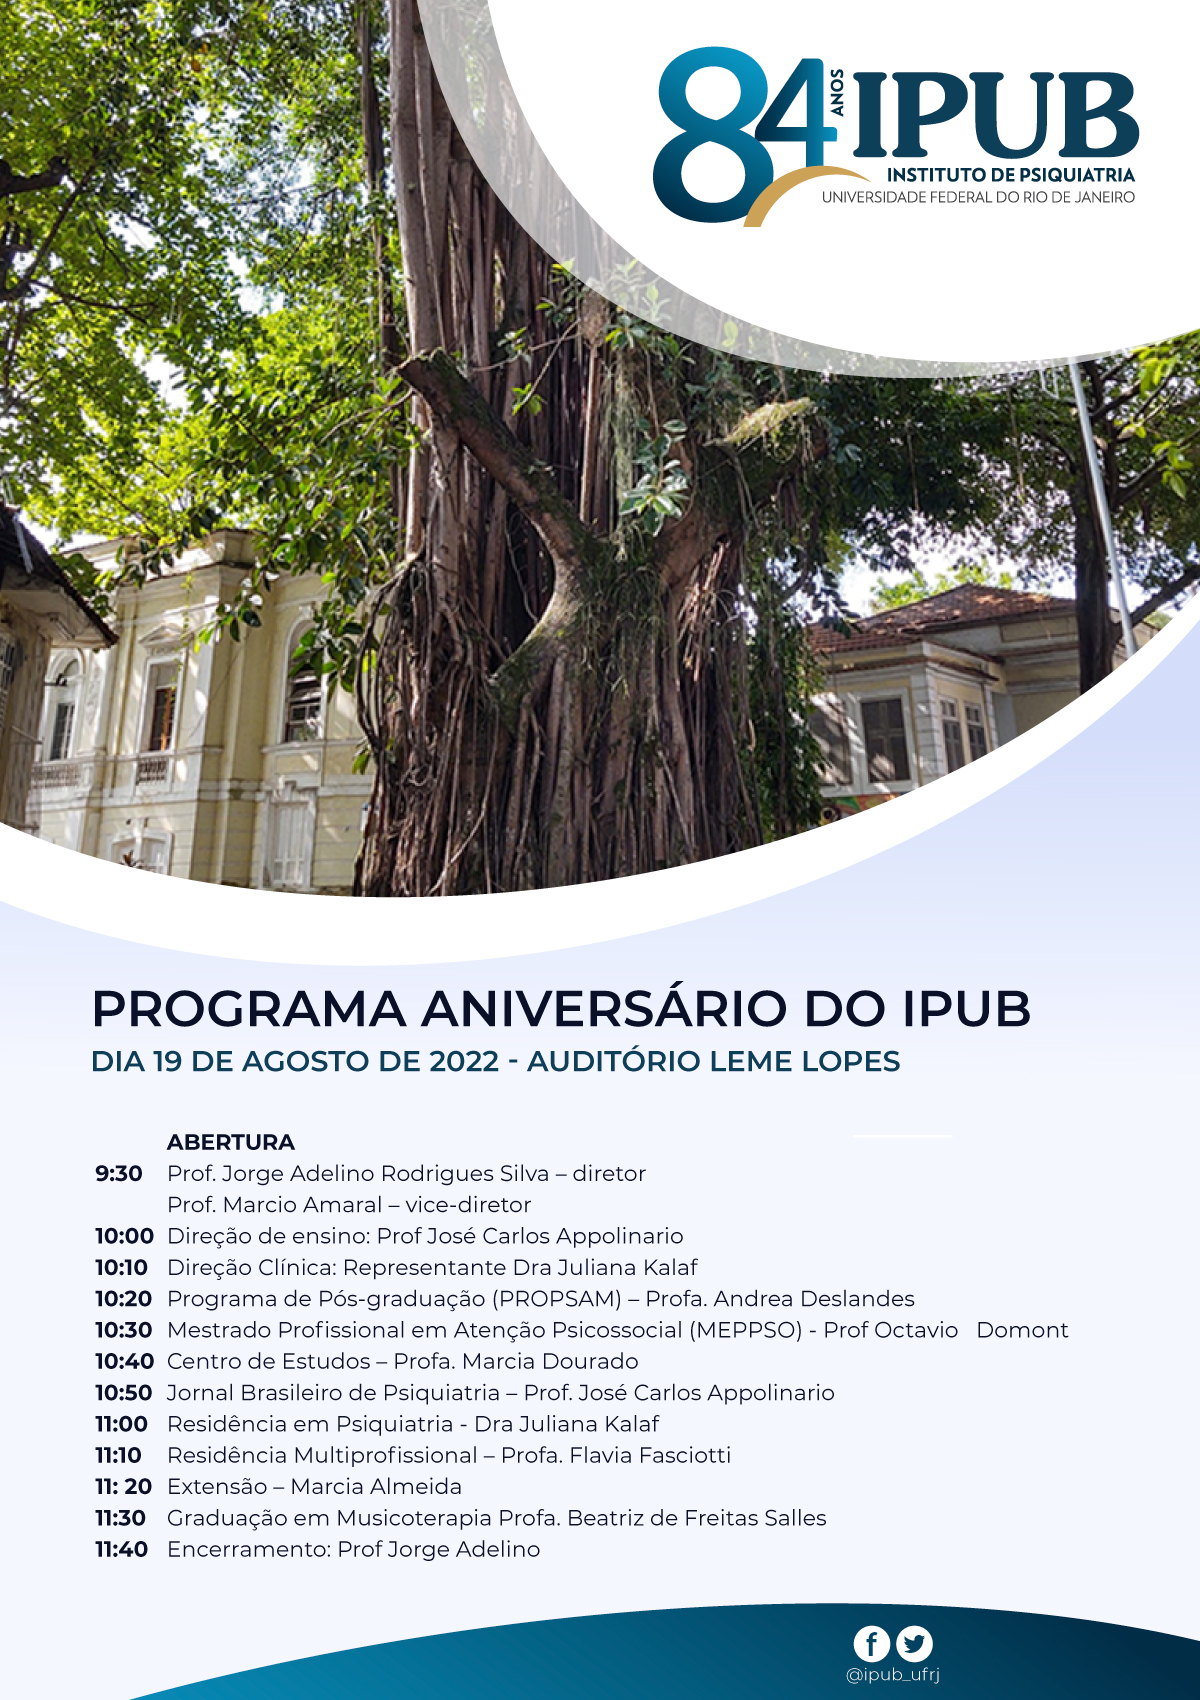 IPUB 84 anos – Programação completa.